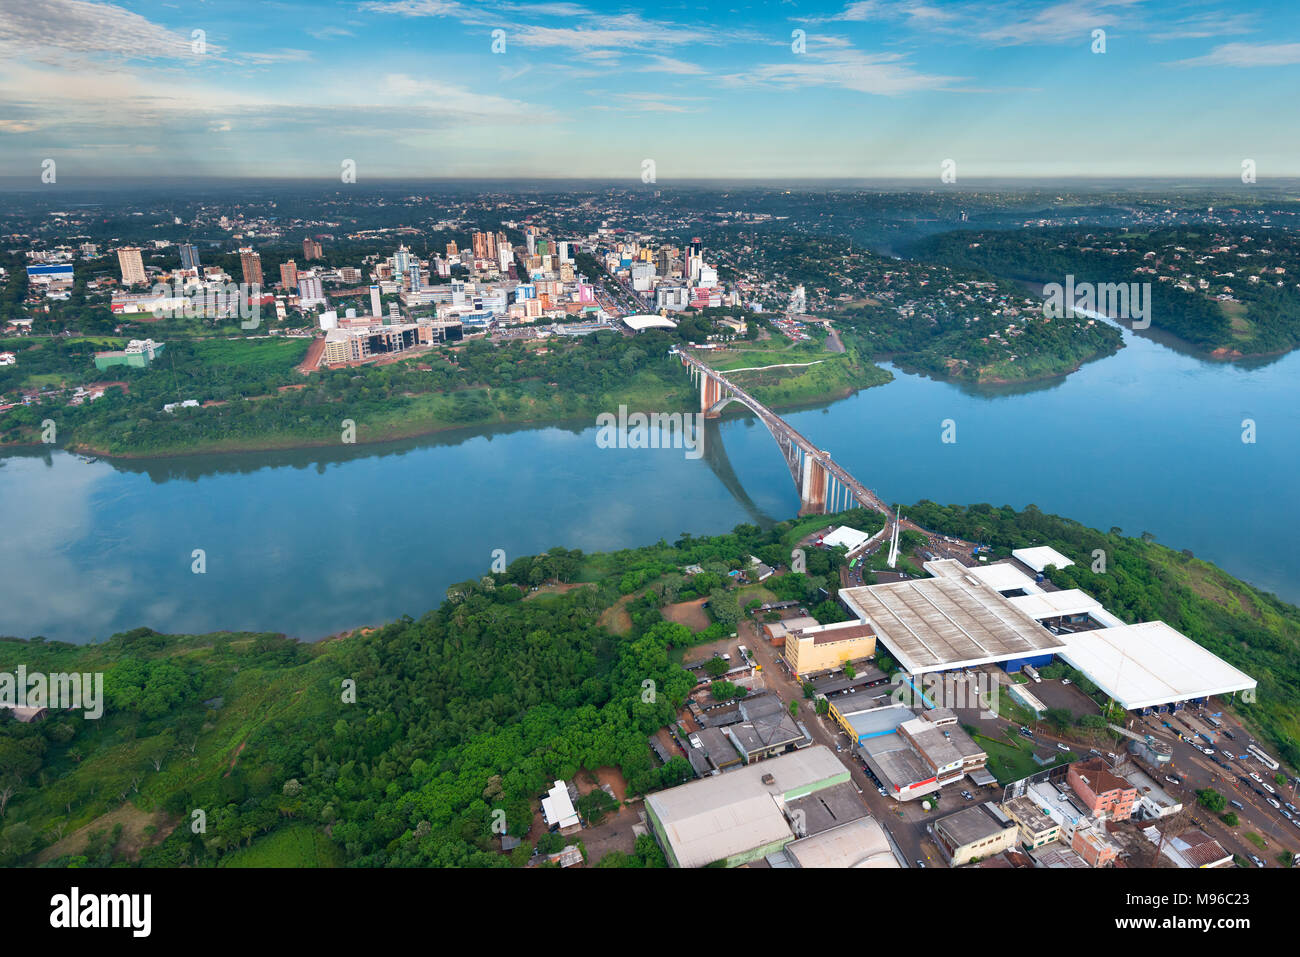 Vista aérea de la ciudad paraguaya de Ciudad del Este y el Puente de la amistad, la conexión de Paraguay y Brasil a través de la frontera sobre el río Paraná, Foto de stock